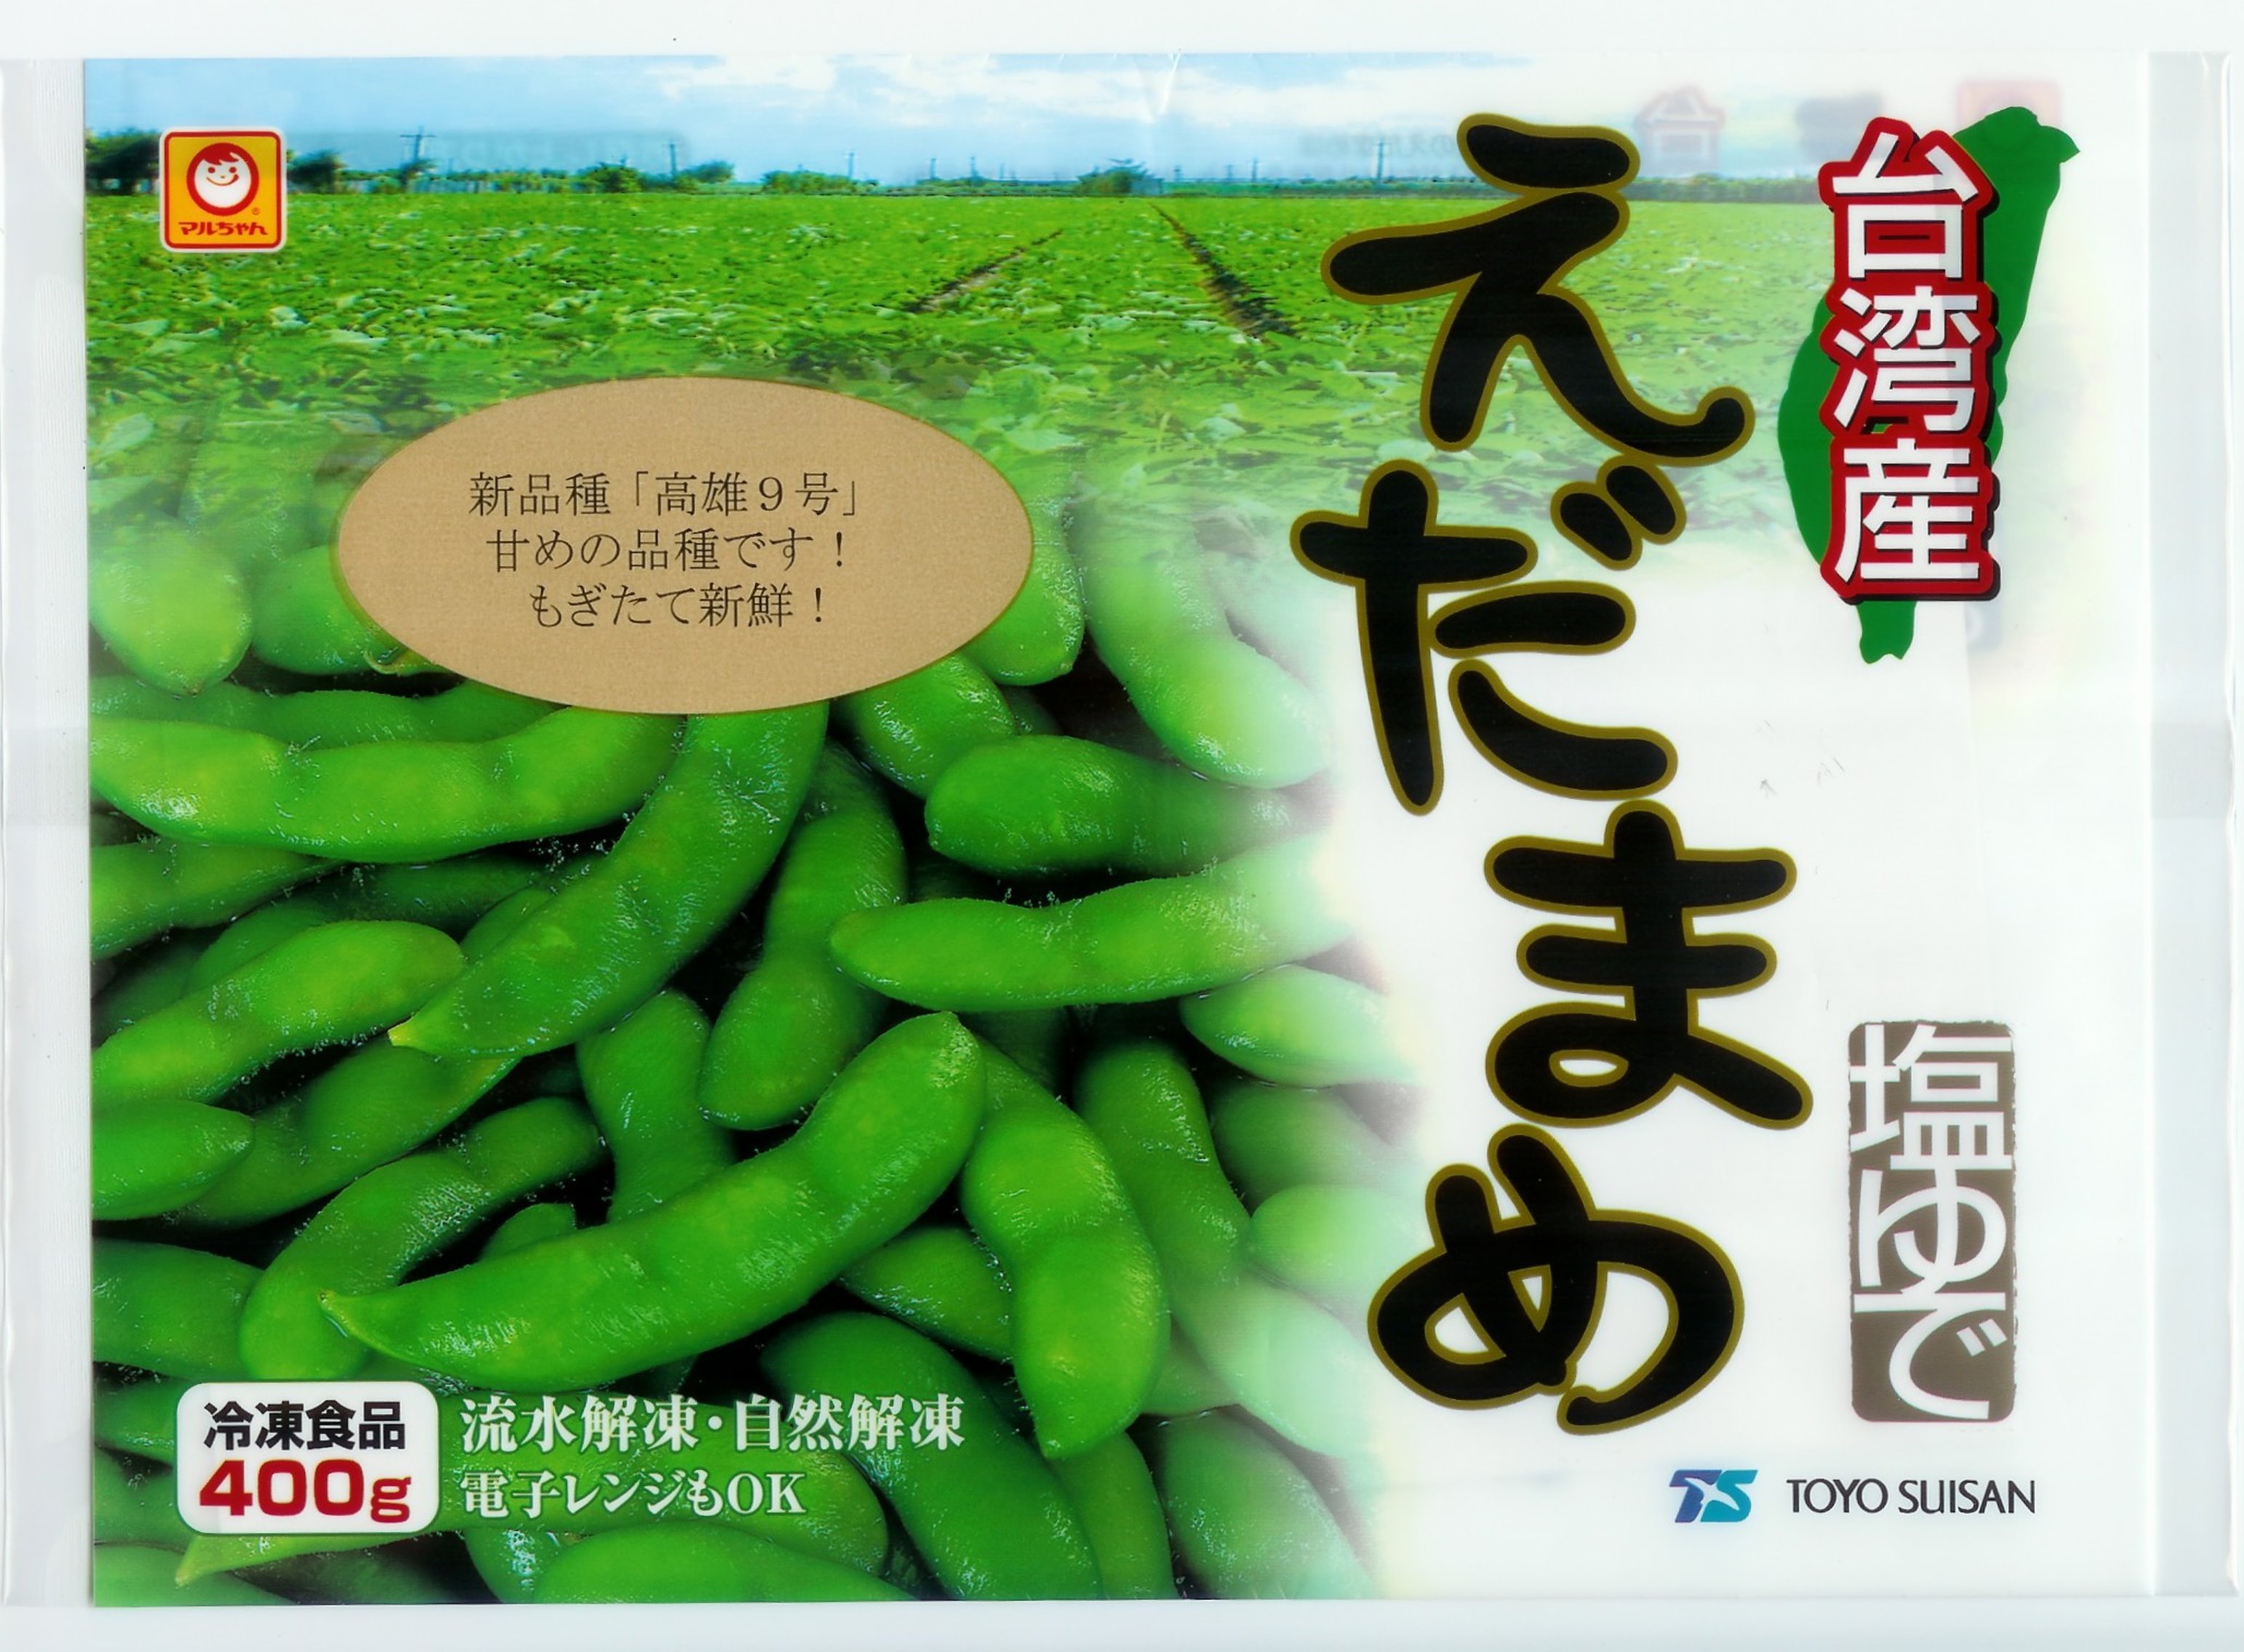 圖3. 臺灣冷凍毛豆產品優質安全，受消費者喜愛